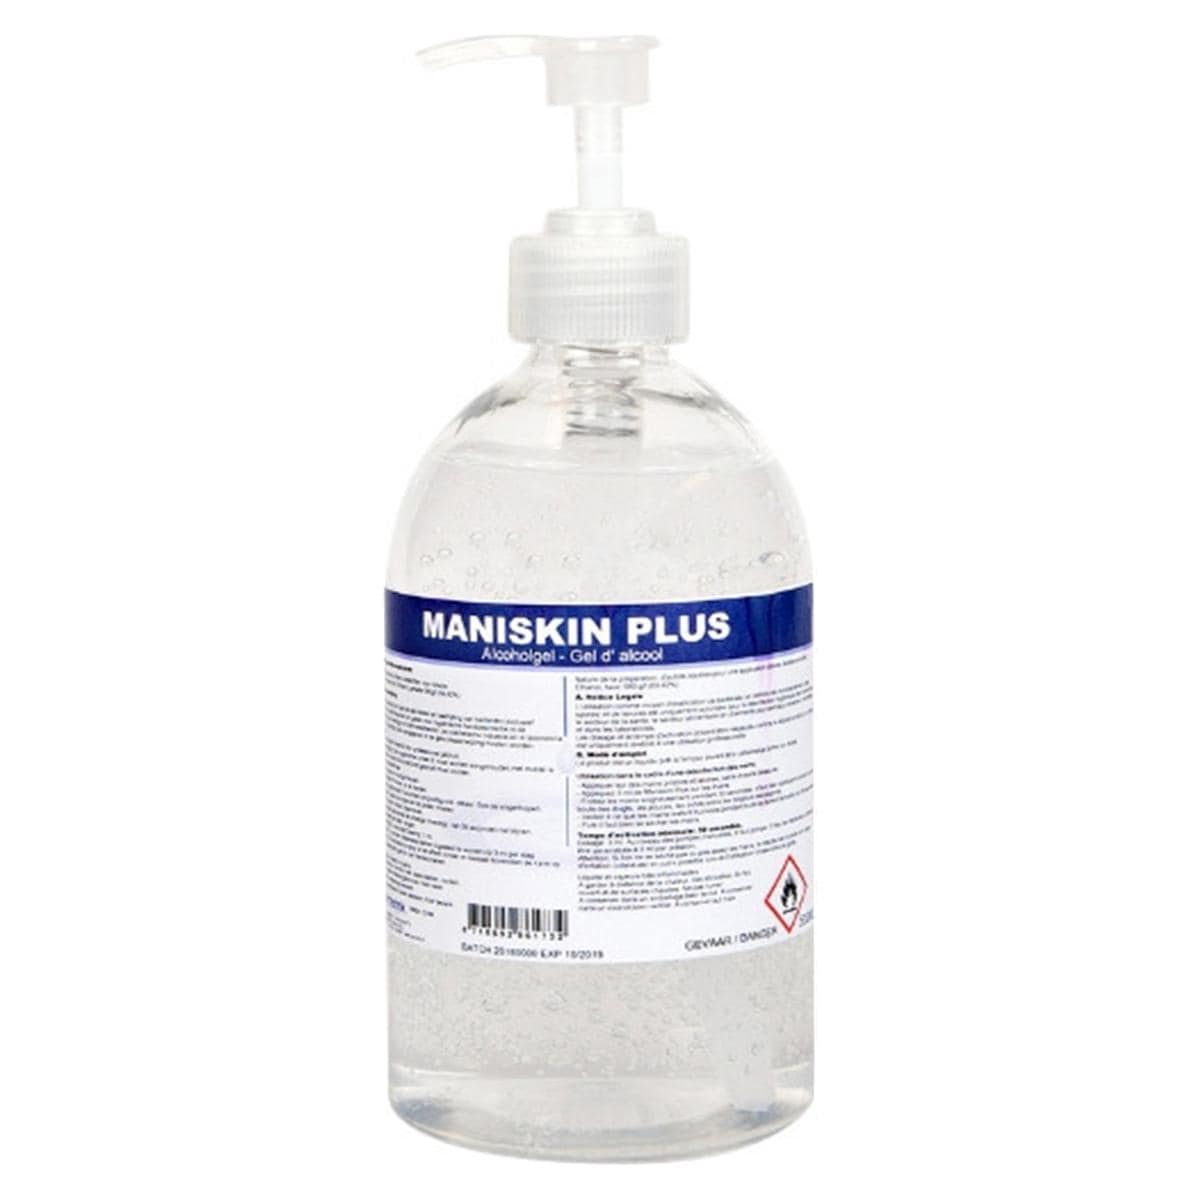 Maniskin Plus - Fles, 500 ml